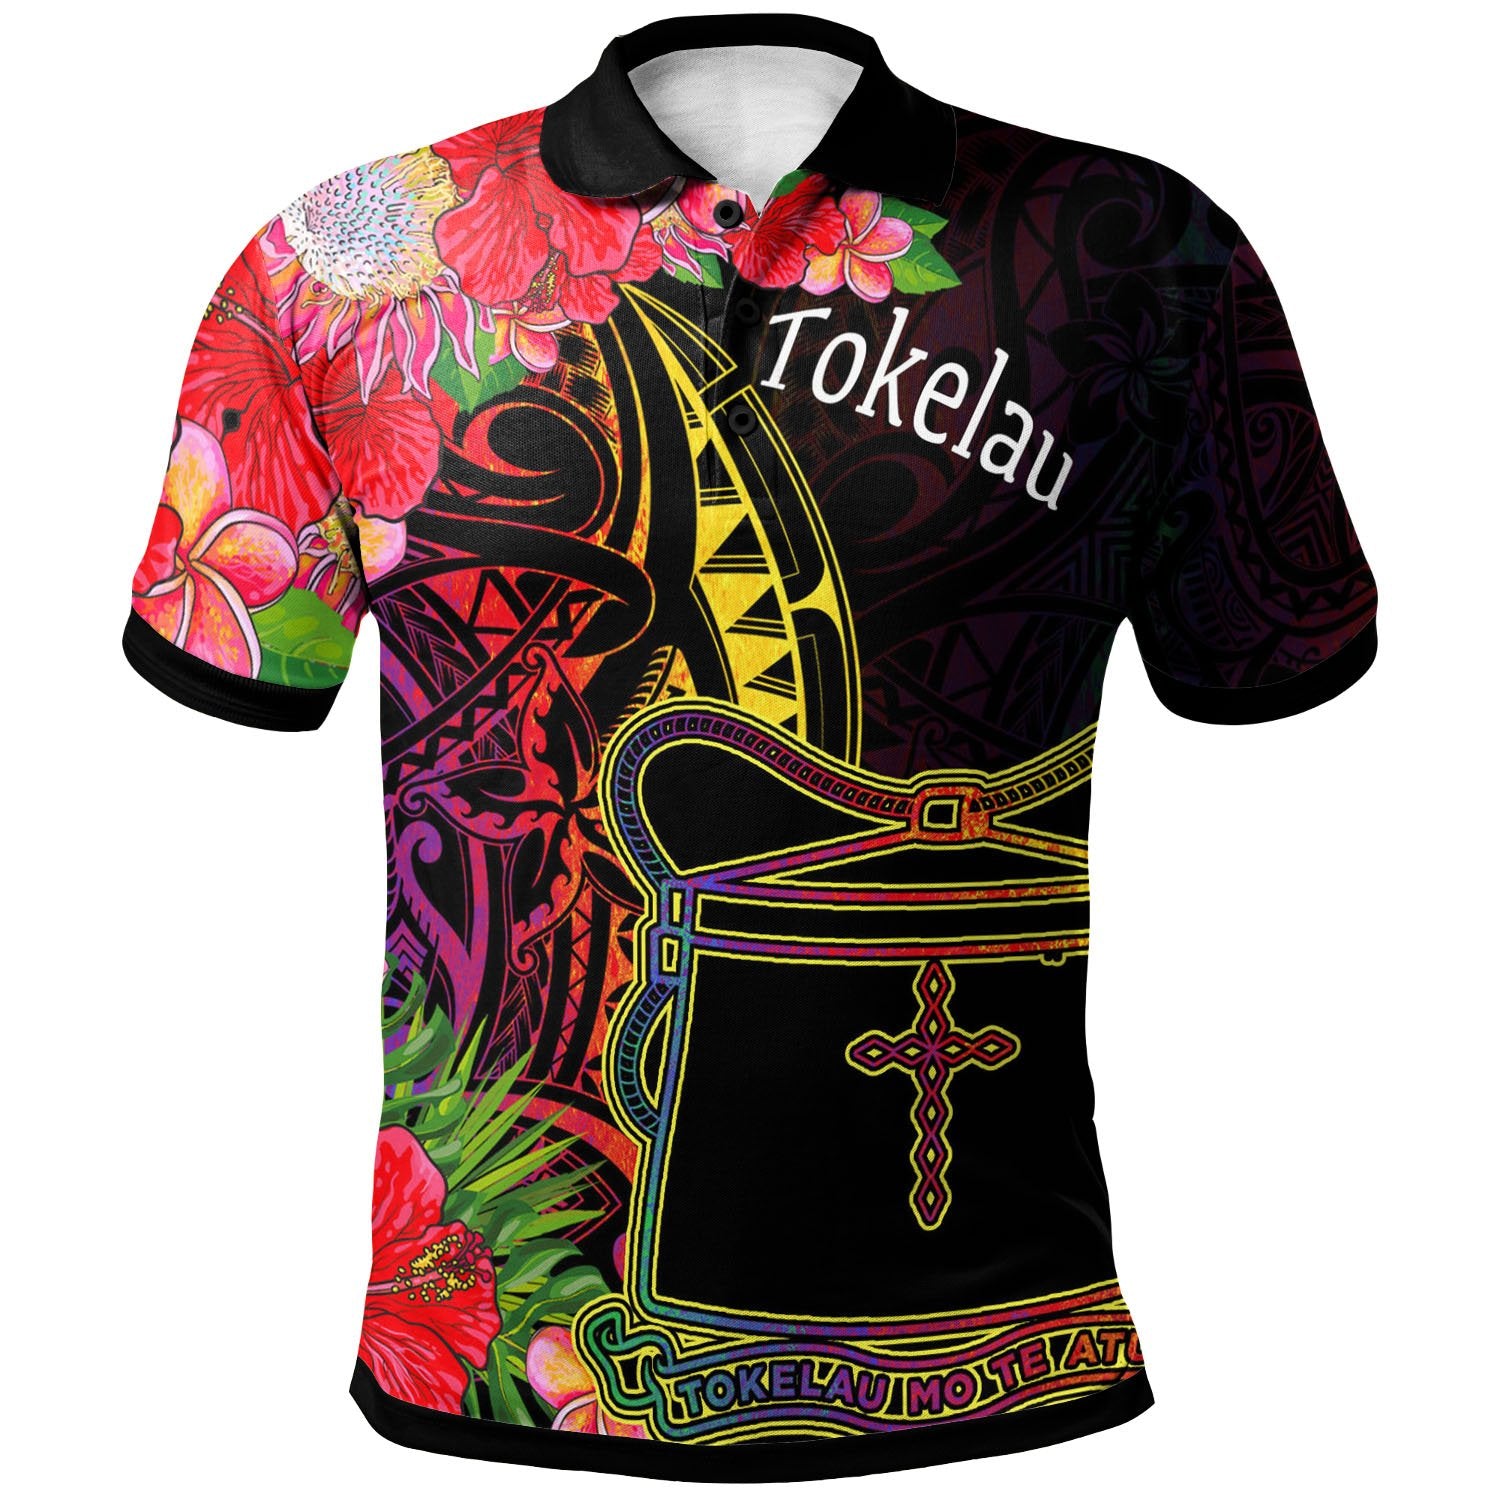 Tokelau Polo Shirt Tropical Hippie Style Unisex Black - Polynesian Pride